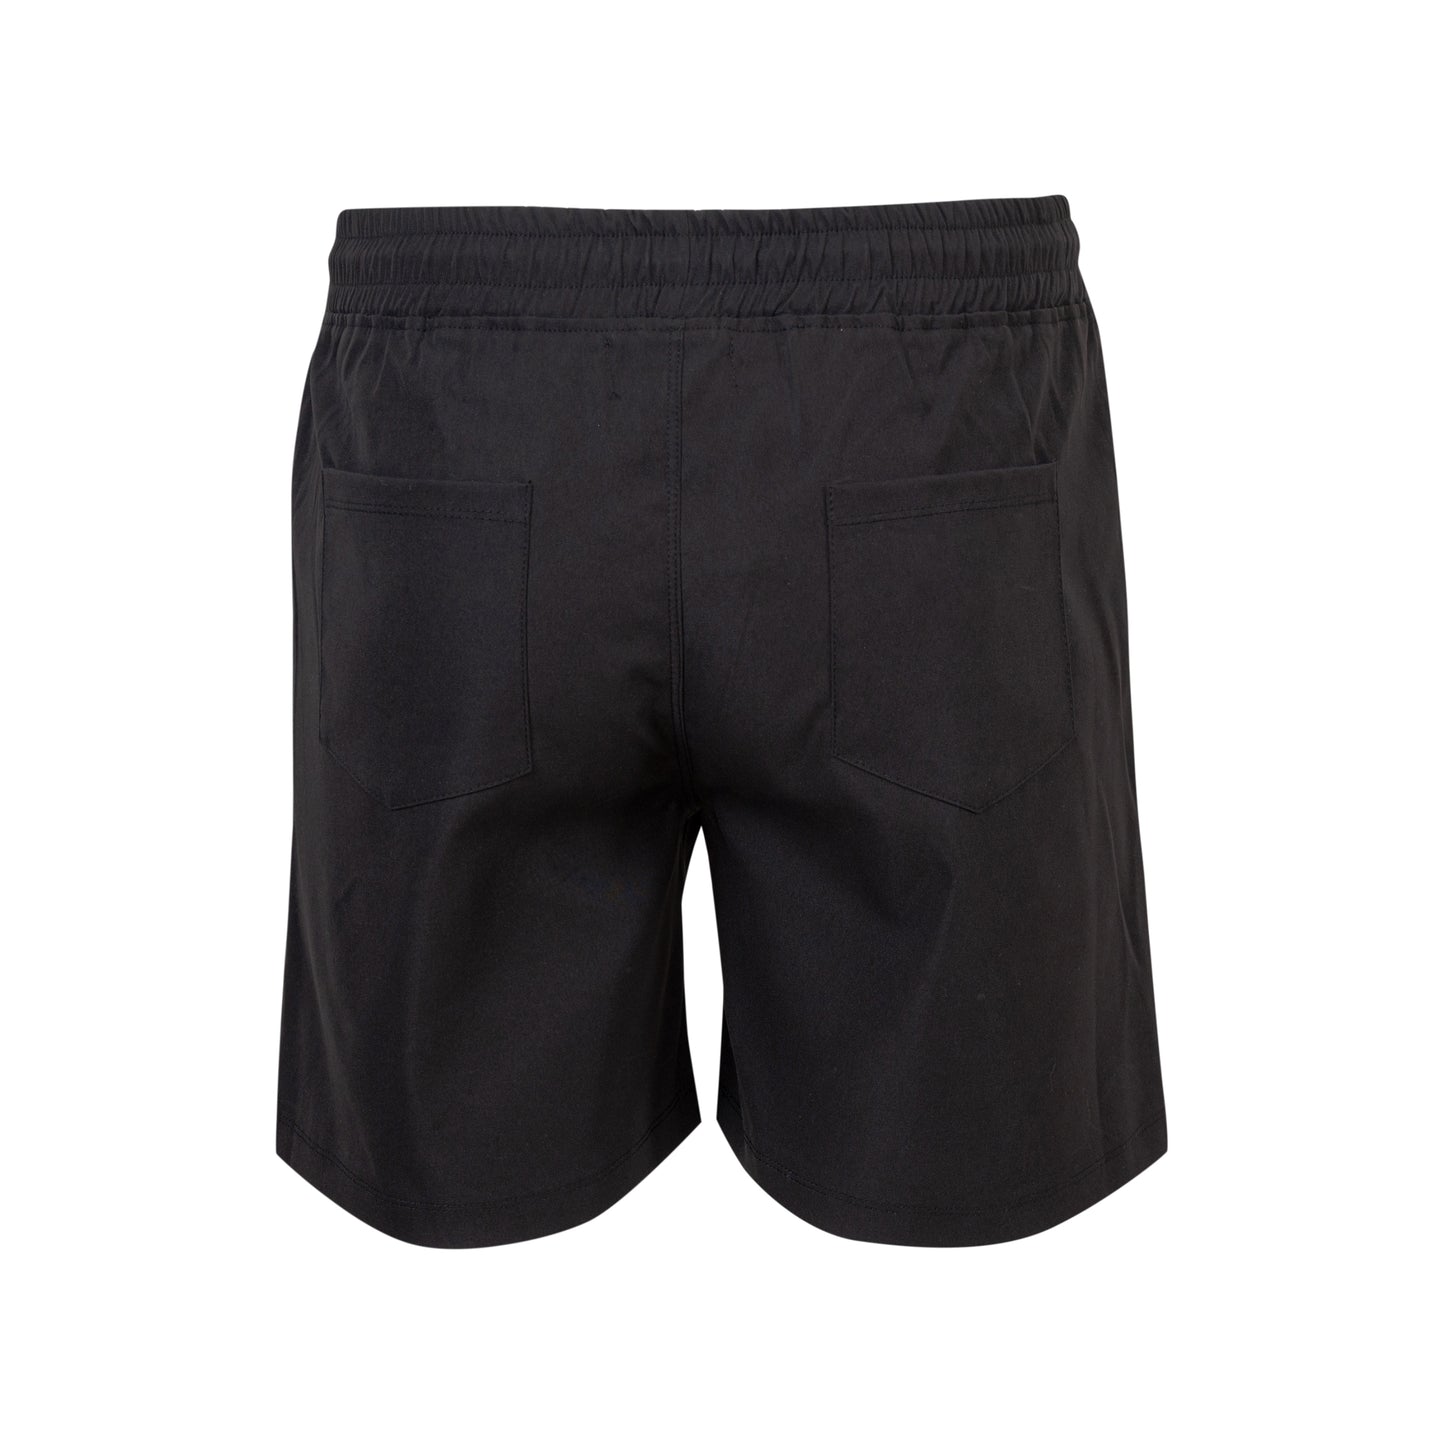 Black Khaki Shorts